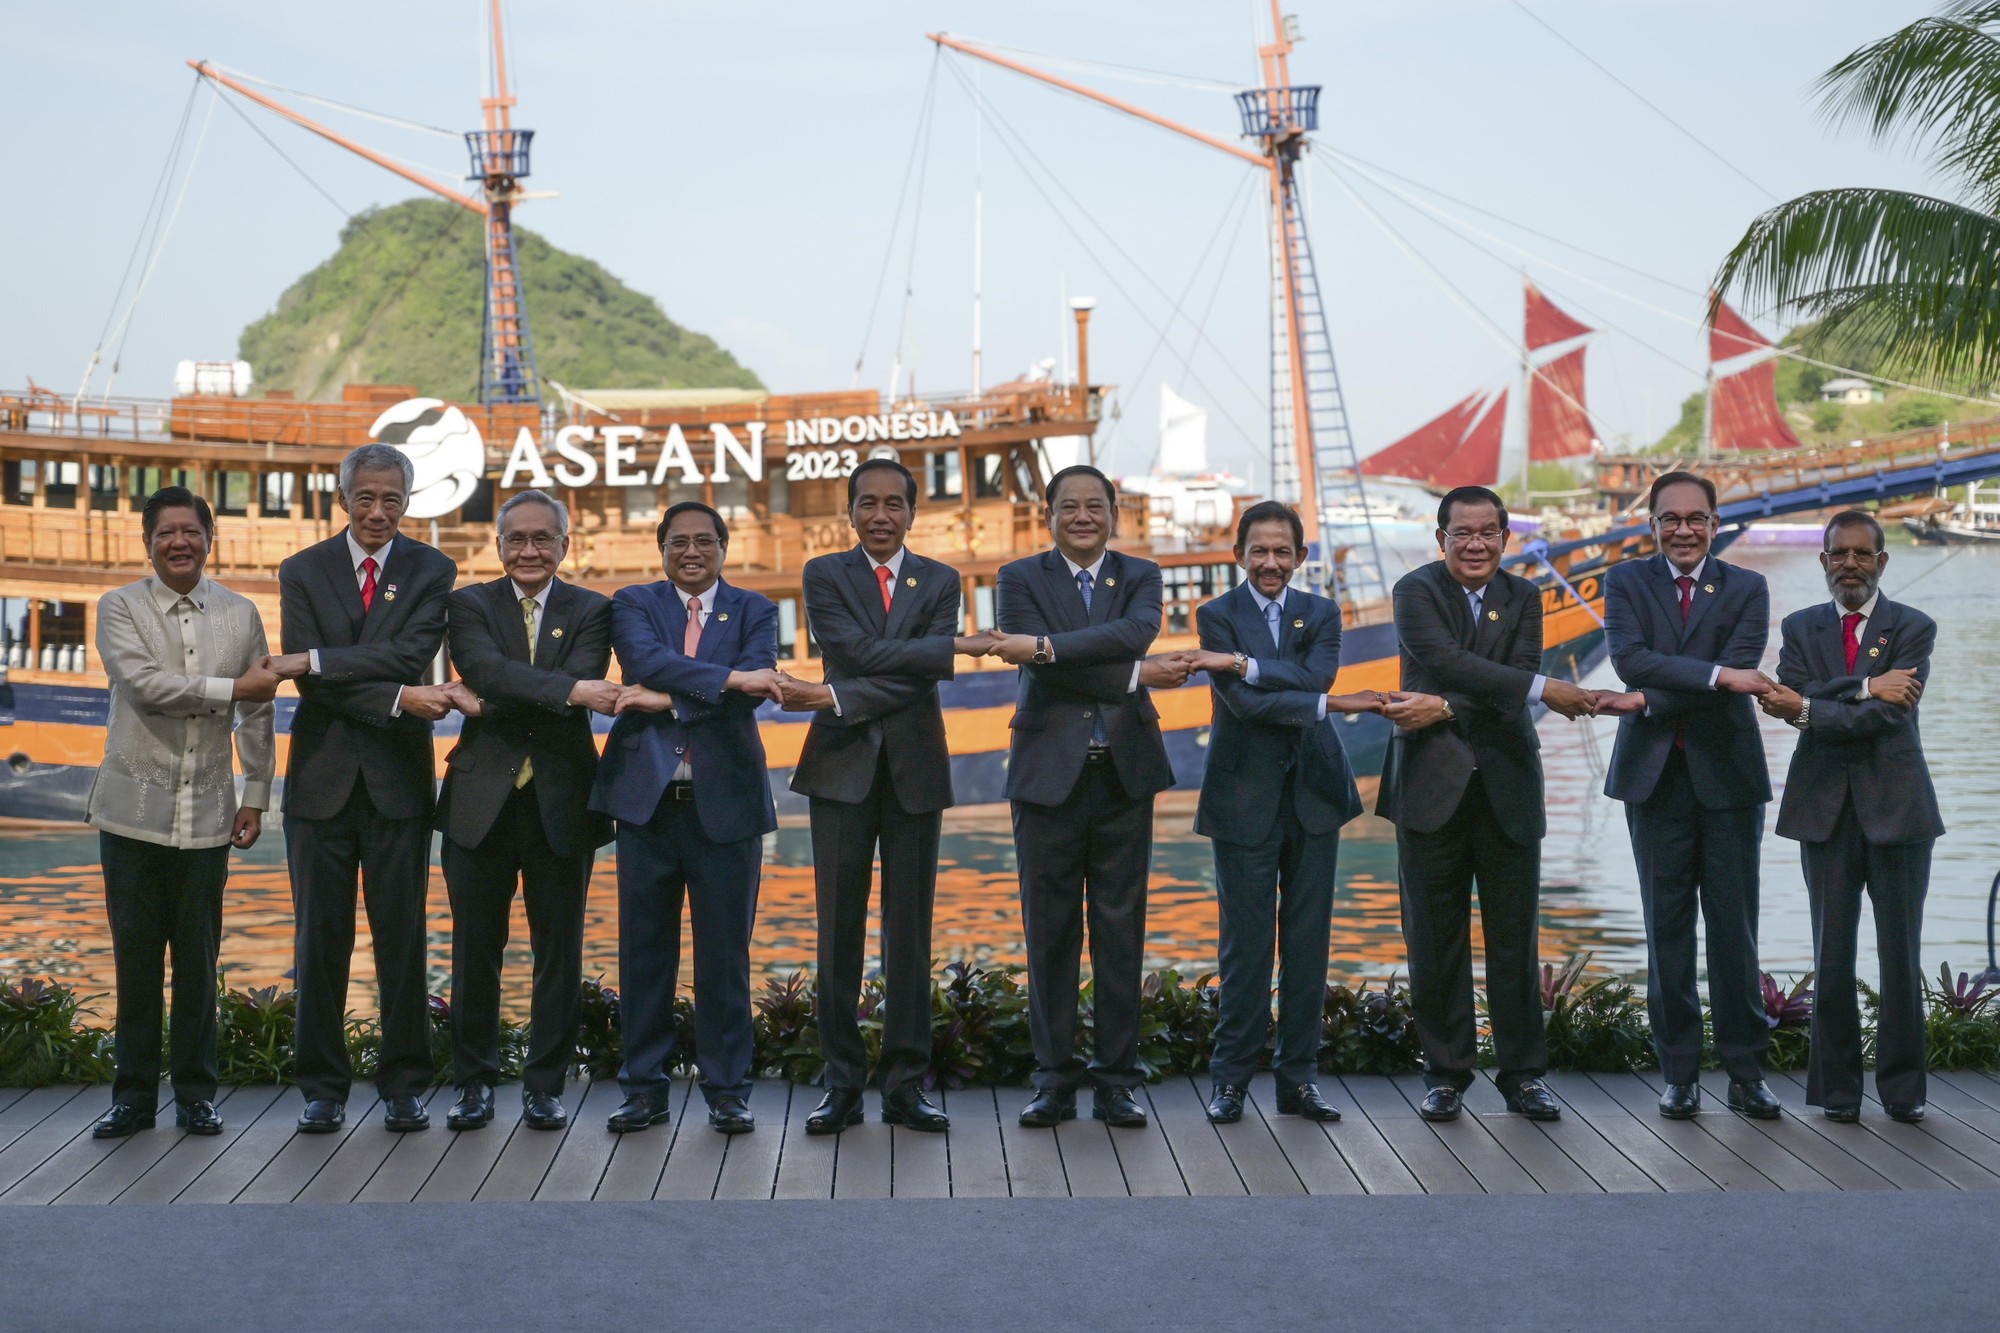 C&aacute;c nh&agrave; l&atilde;nh đạo ASEAN tham dự Hội nghị cấp cao ASEAN lần thứ 42 tại Labuan Bajo, Indonesia ng&agrave;y 10/5/2023. Ảnh: VGP